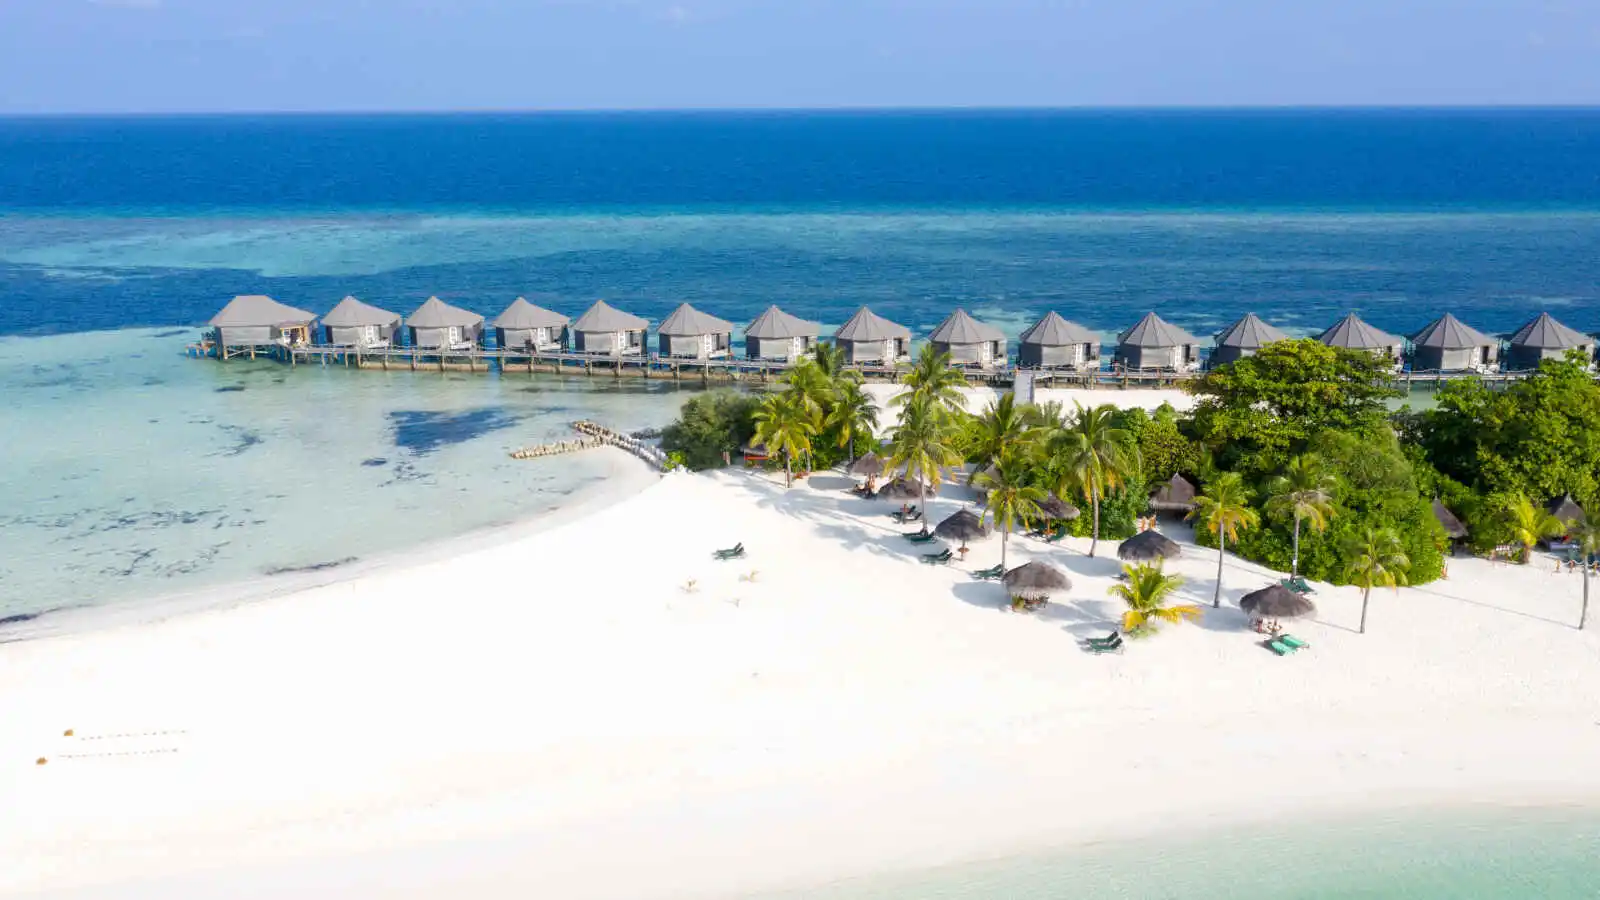 Villas sur pilotis, Kuredu Island Resort & Spa, Maldives